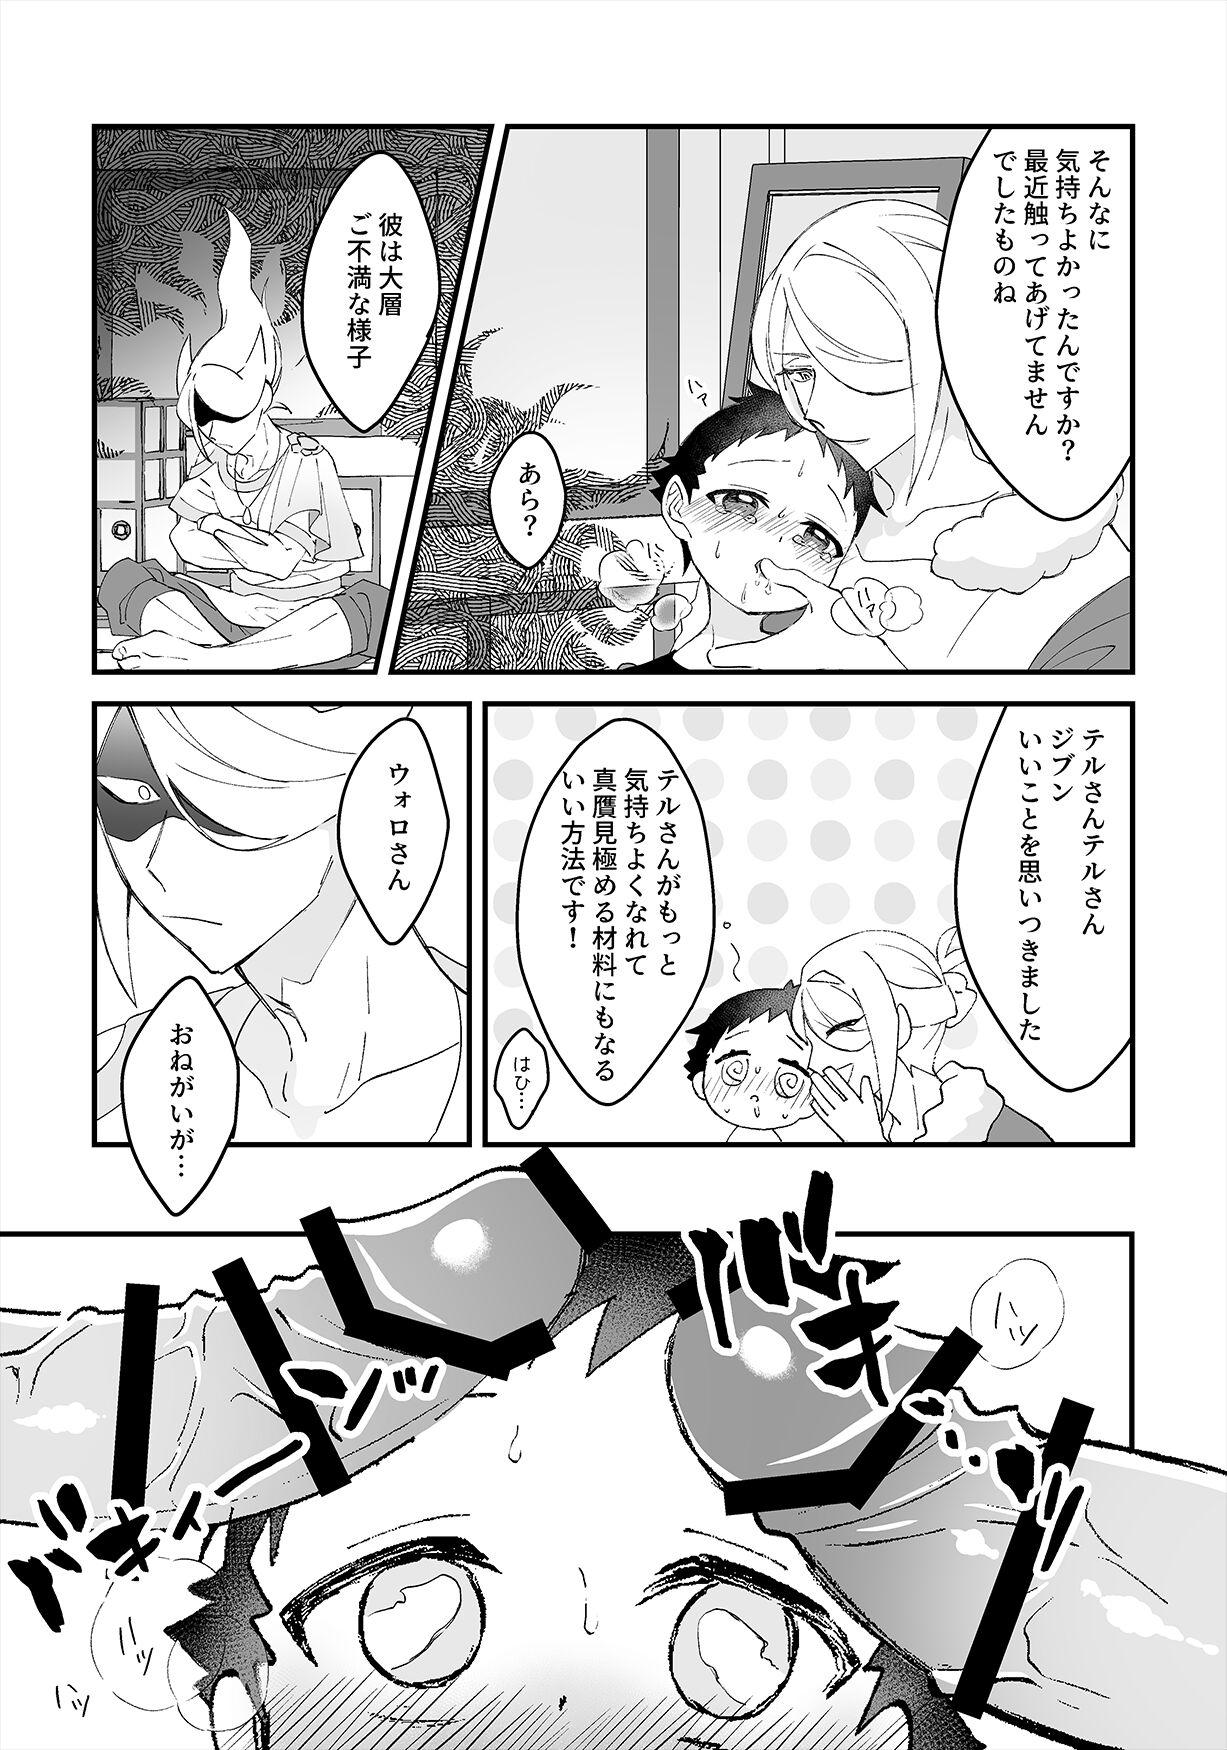 Cuzinho Yoiko Waruiko SUNAOnako. - Pokemon | pocket monsters 3way - Page 11